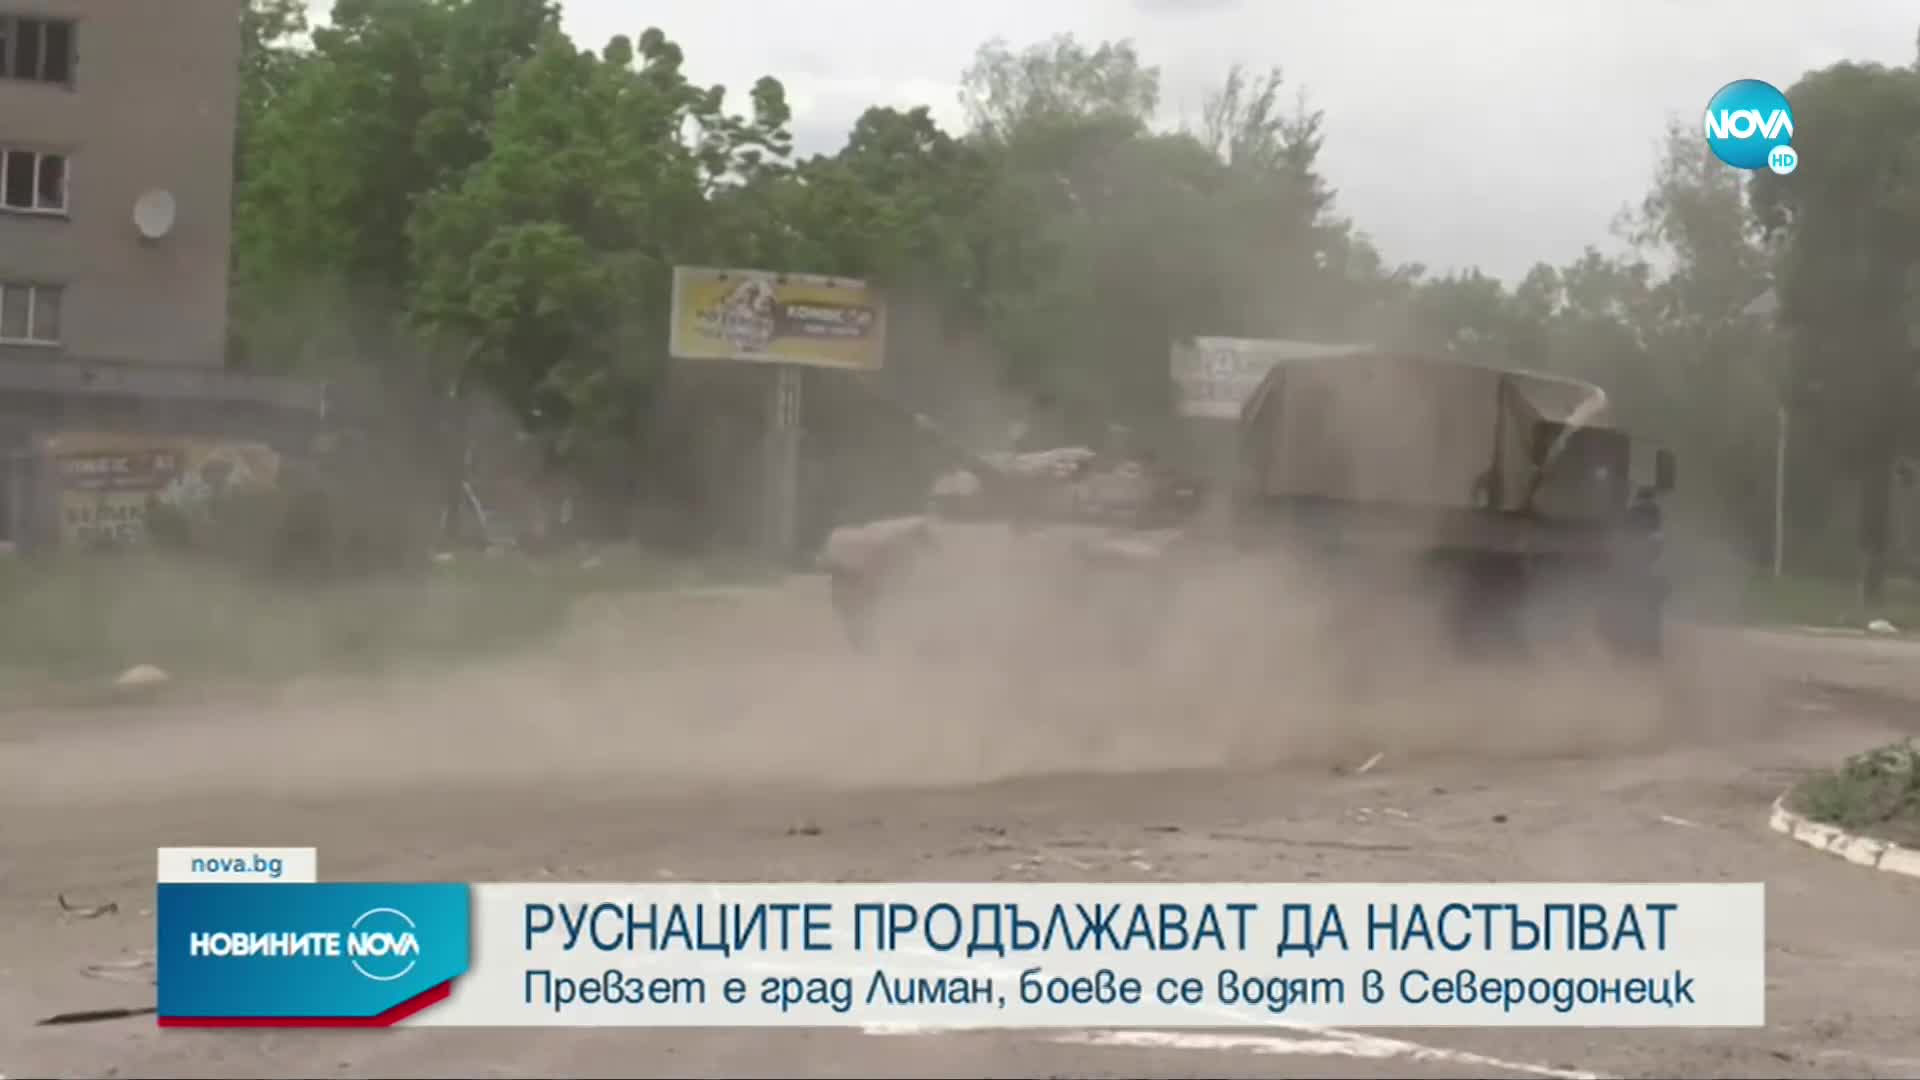 Руските войски завзеха важен град в Донбас